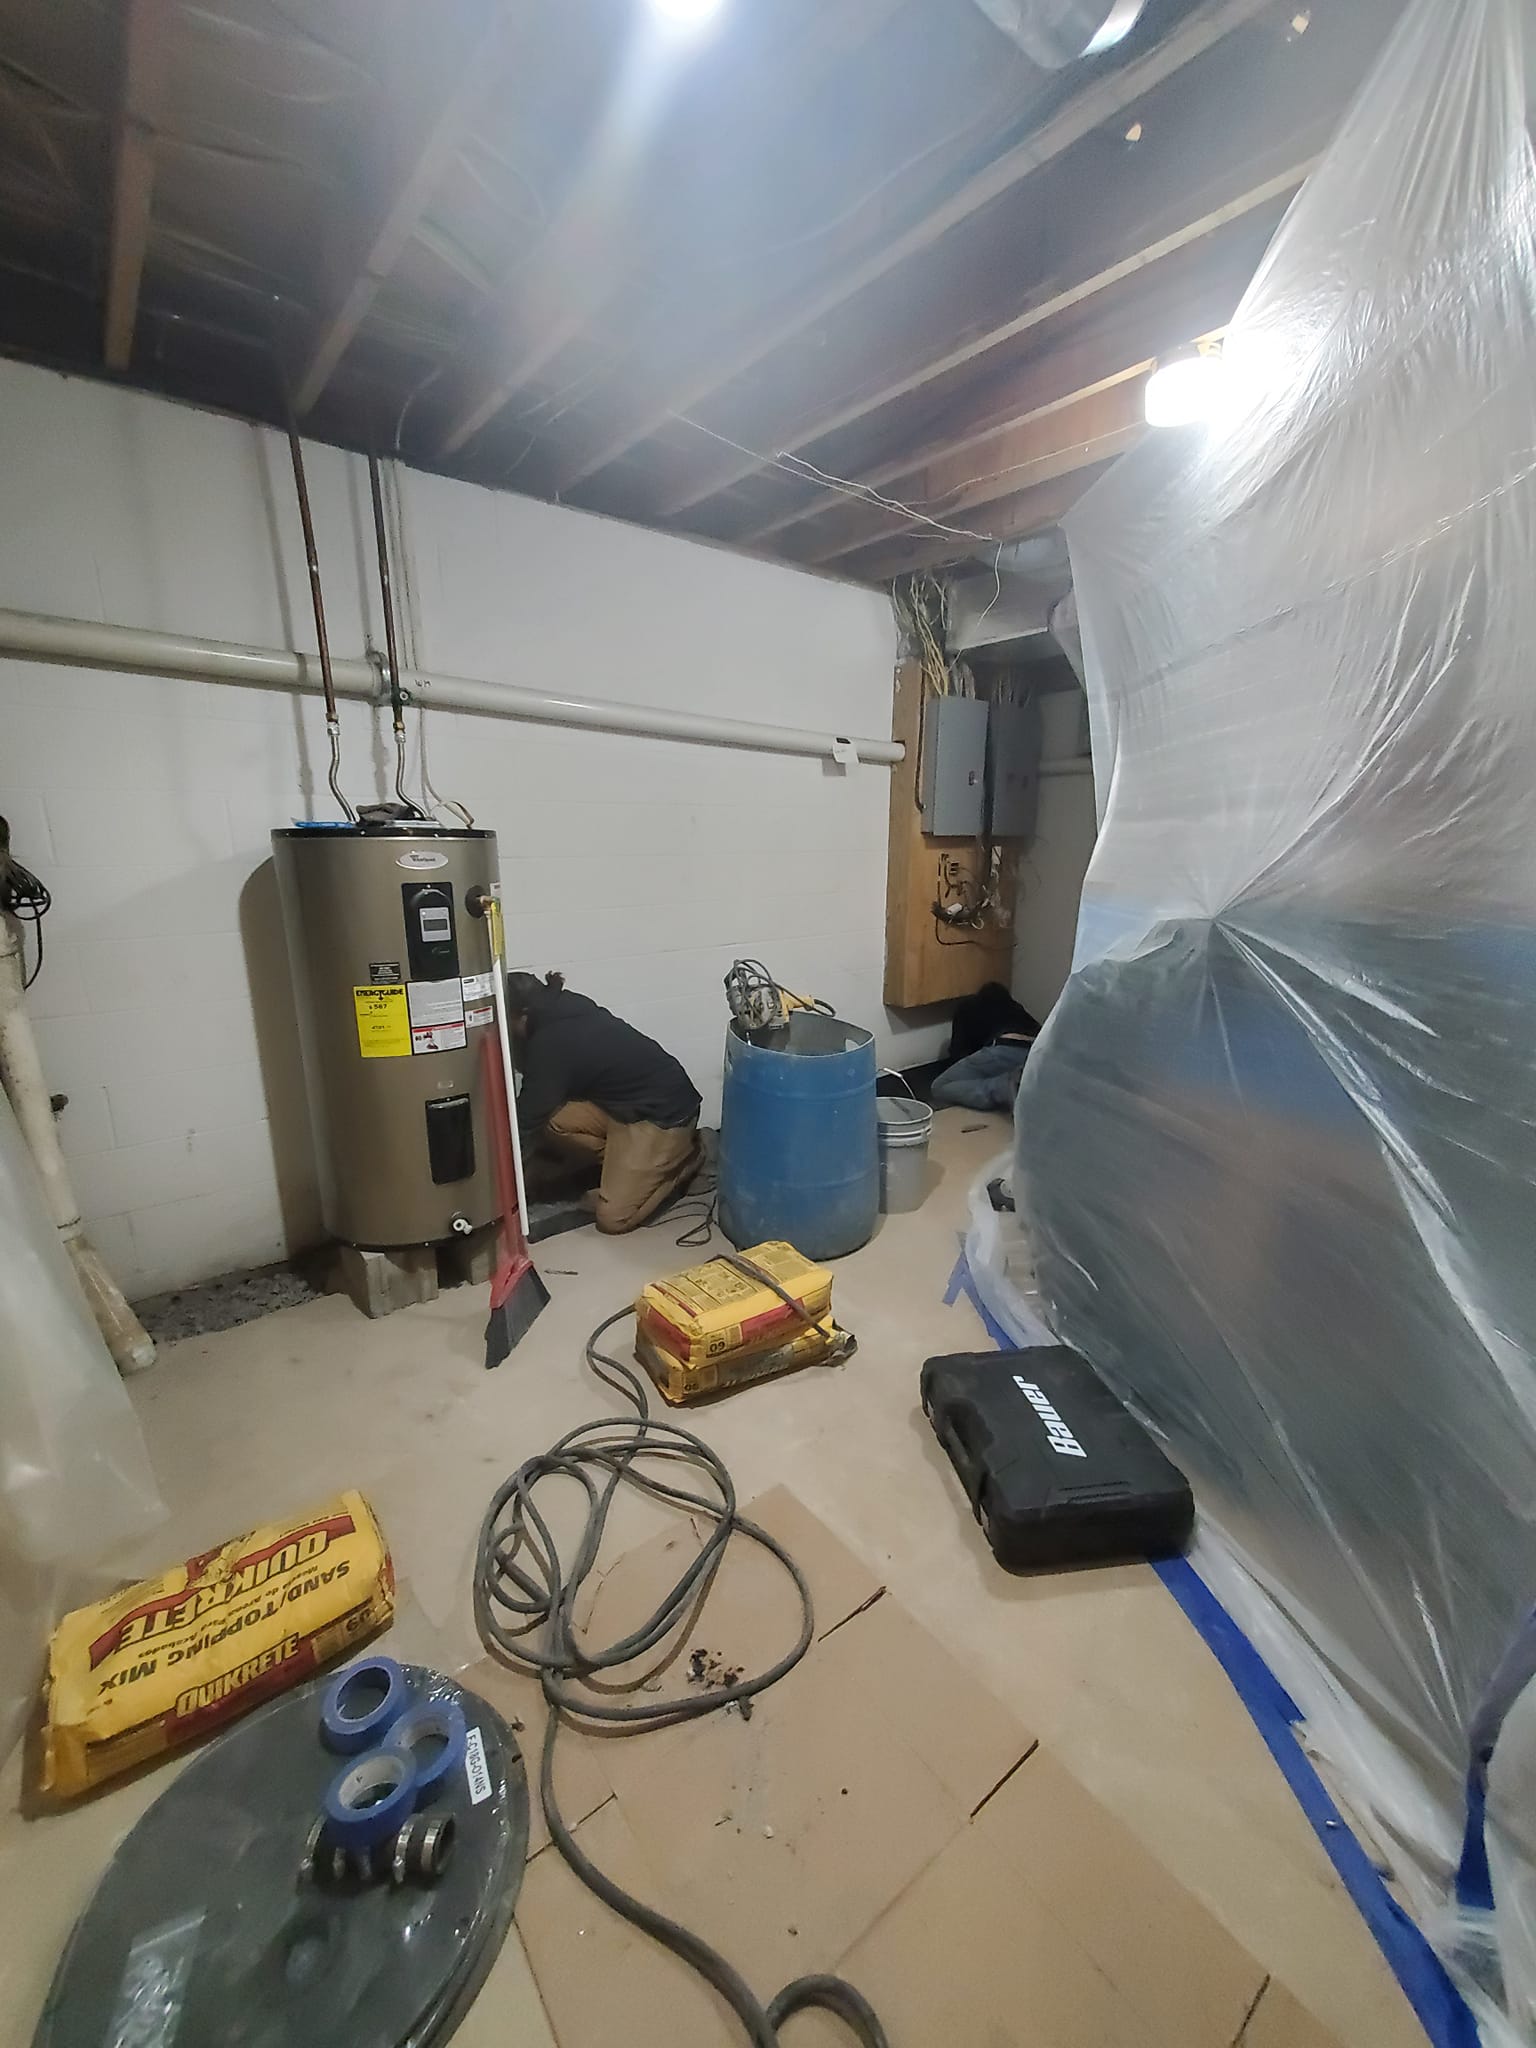 basement repair in progress